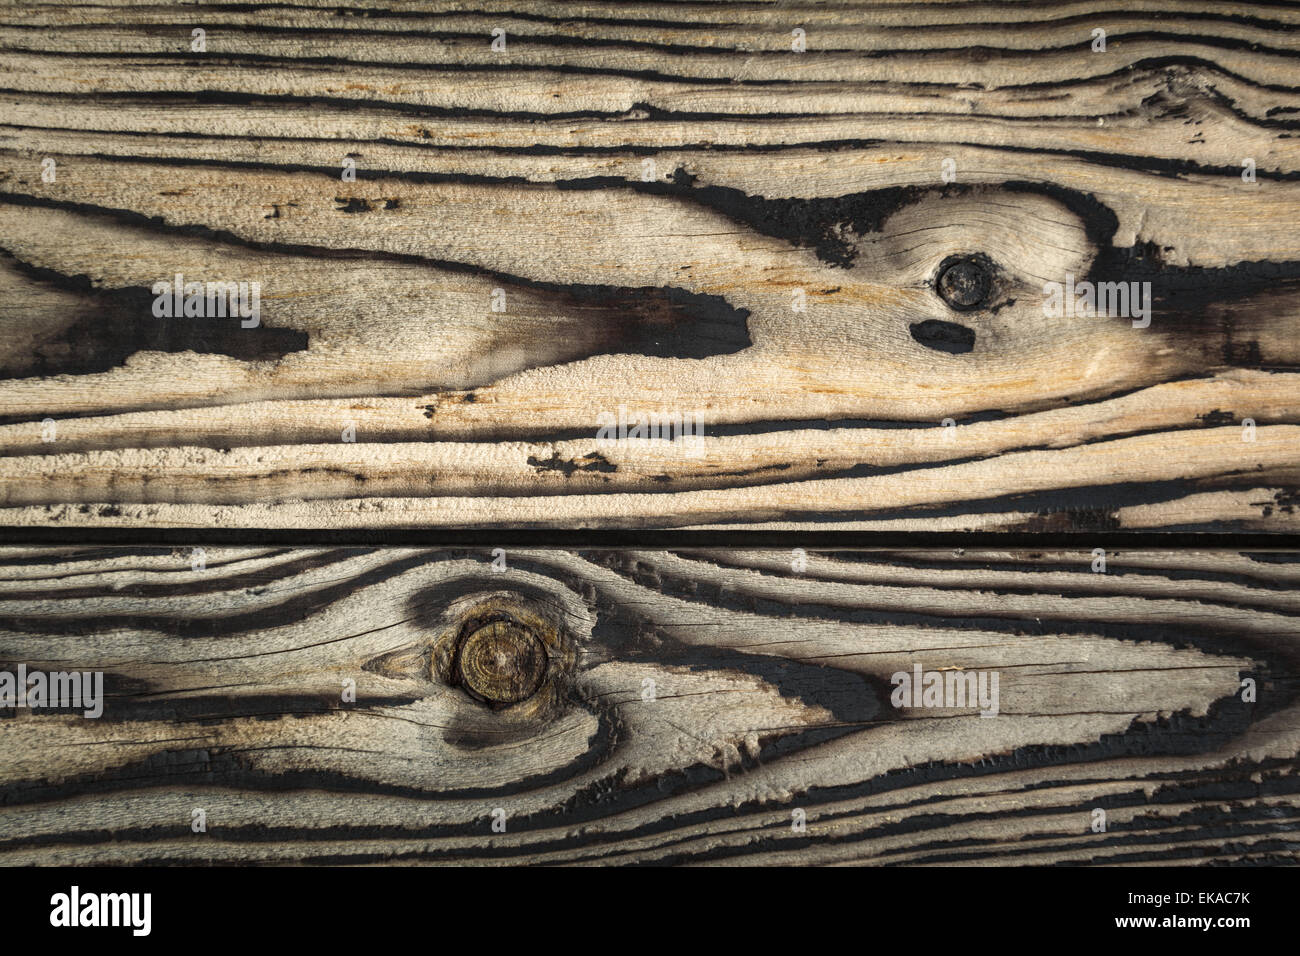 Vieux bois texture. background décoratifs Banque D'Images